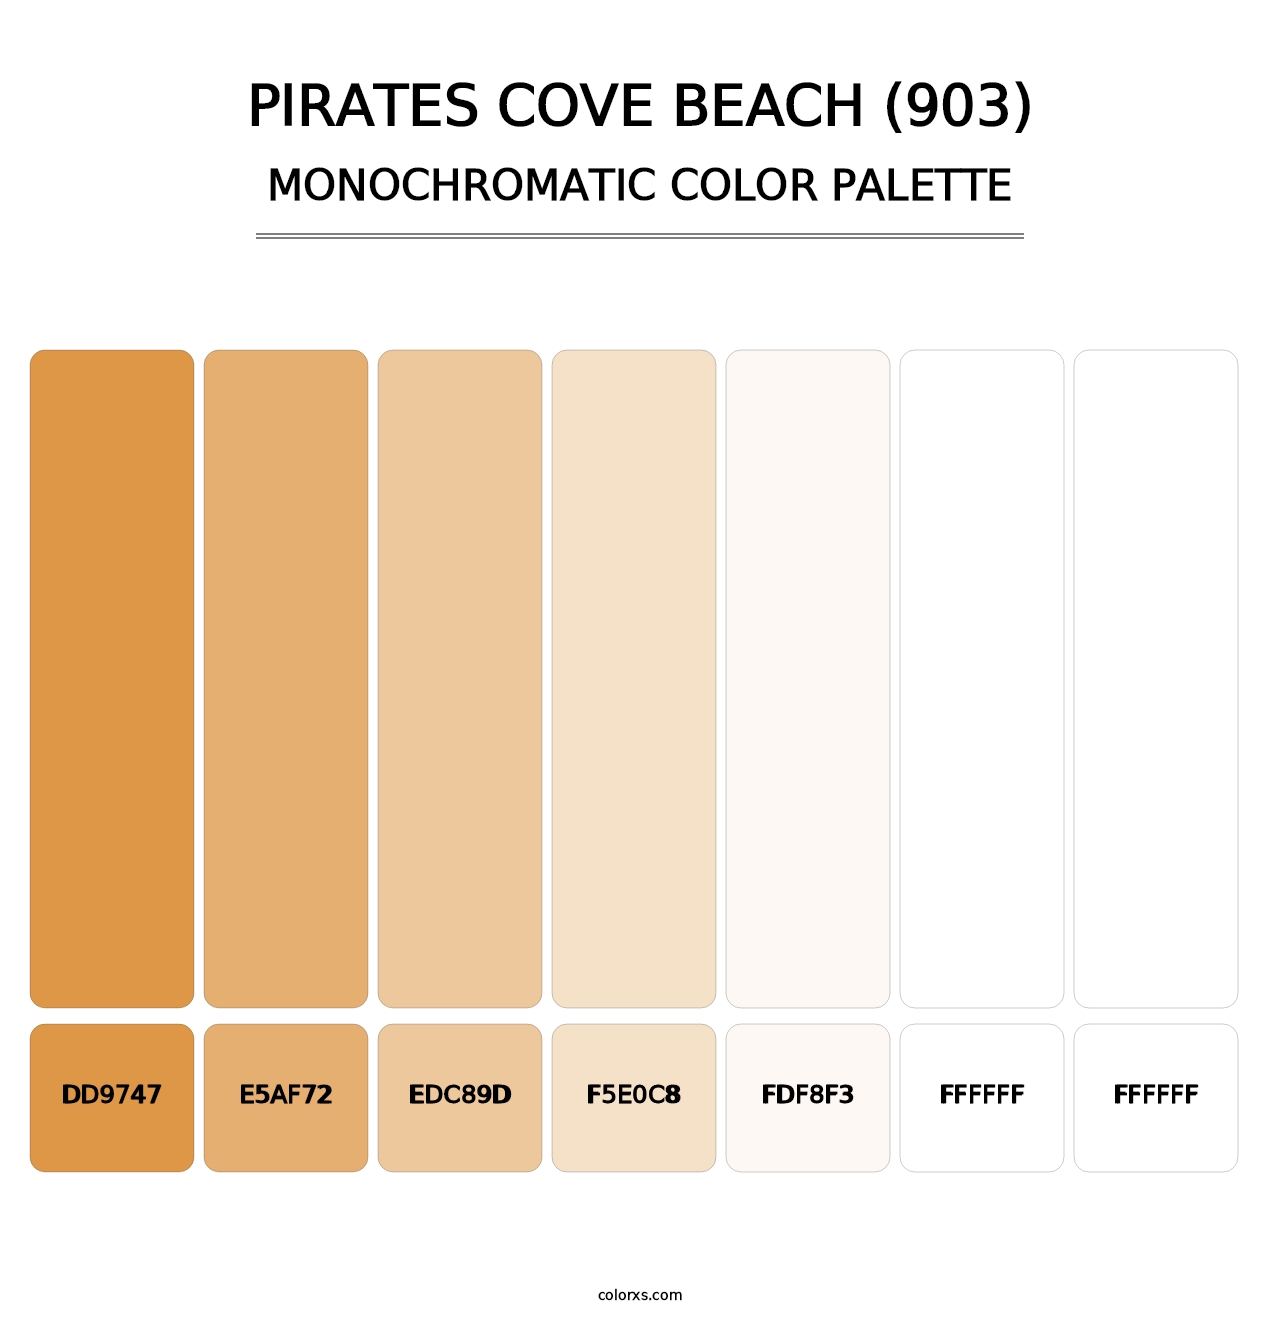 Pirates Cove Beach (903) - Monochromatic Color Palette